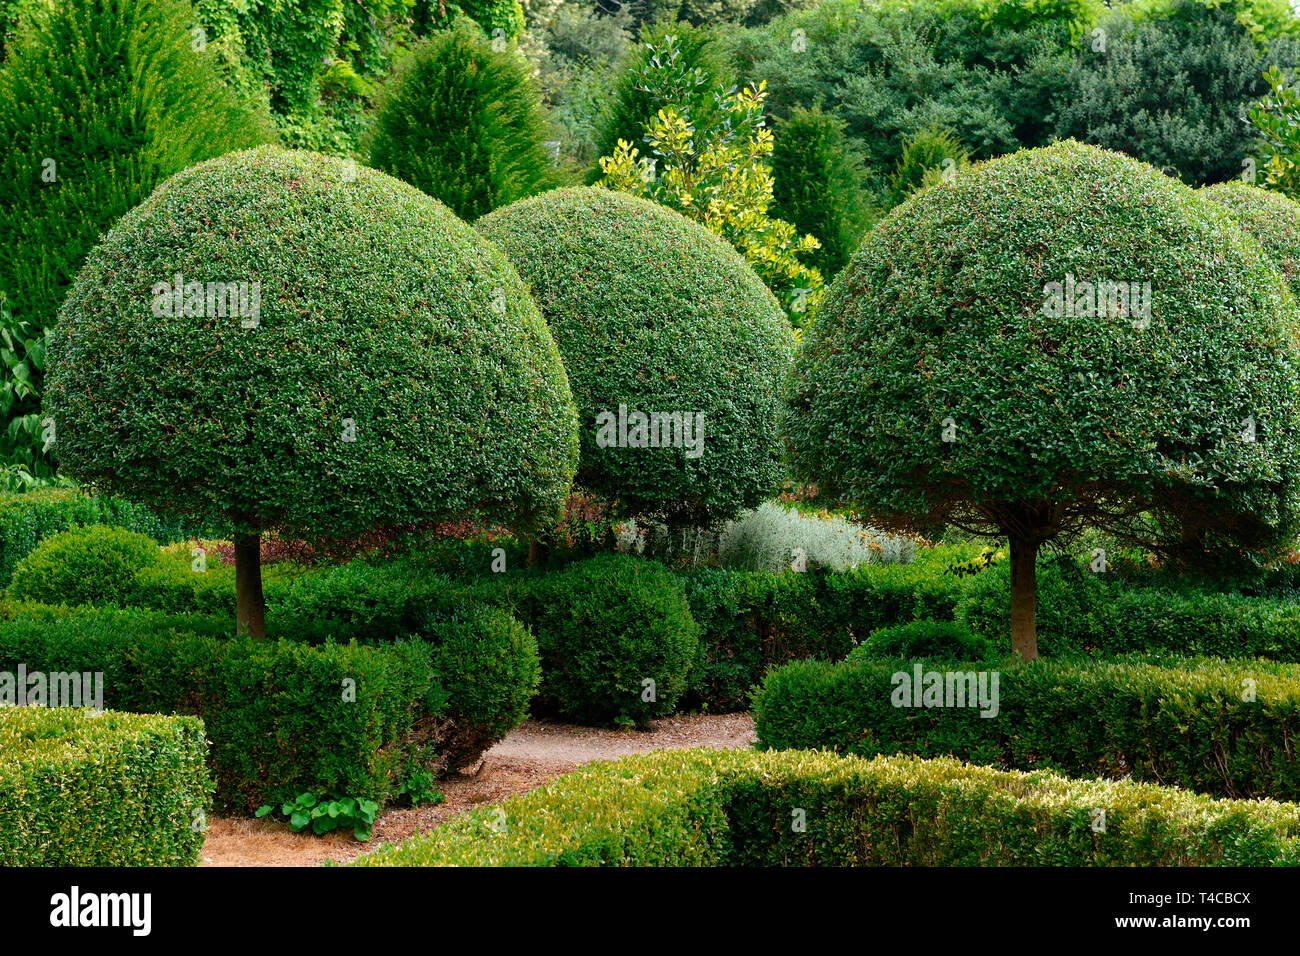 Buchsbaum, Formschnitt, Buxus sempervirens Stock Photo